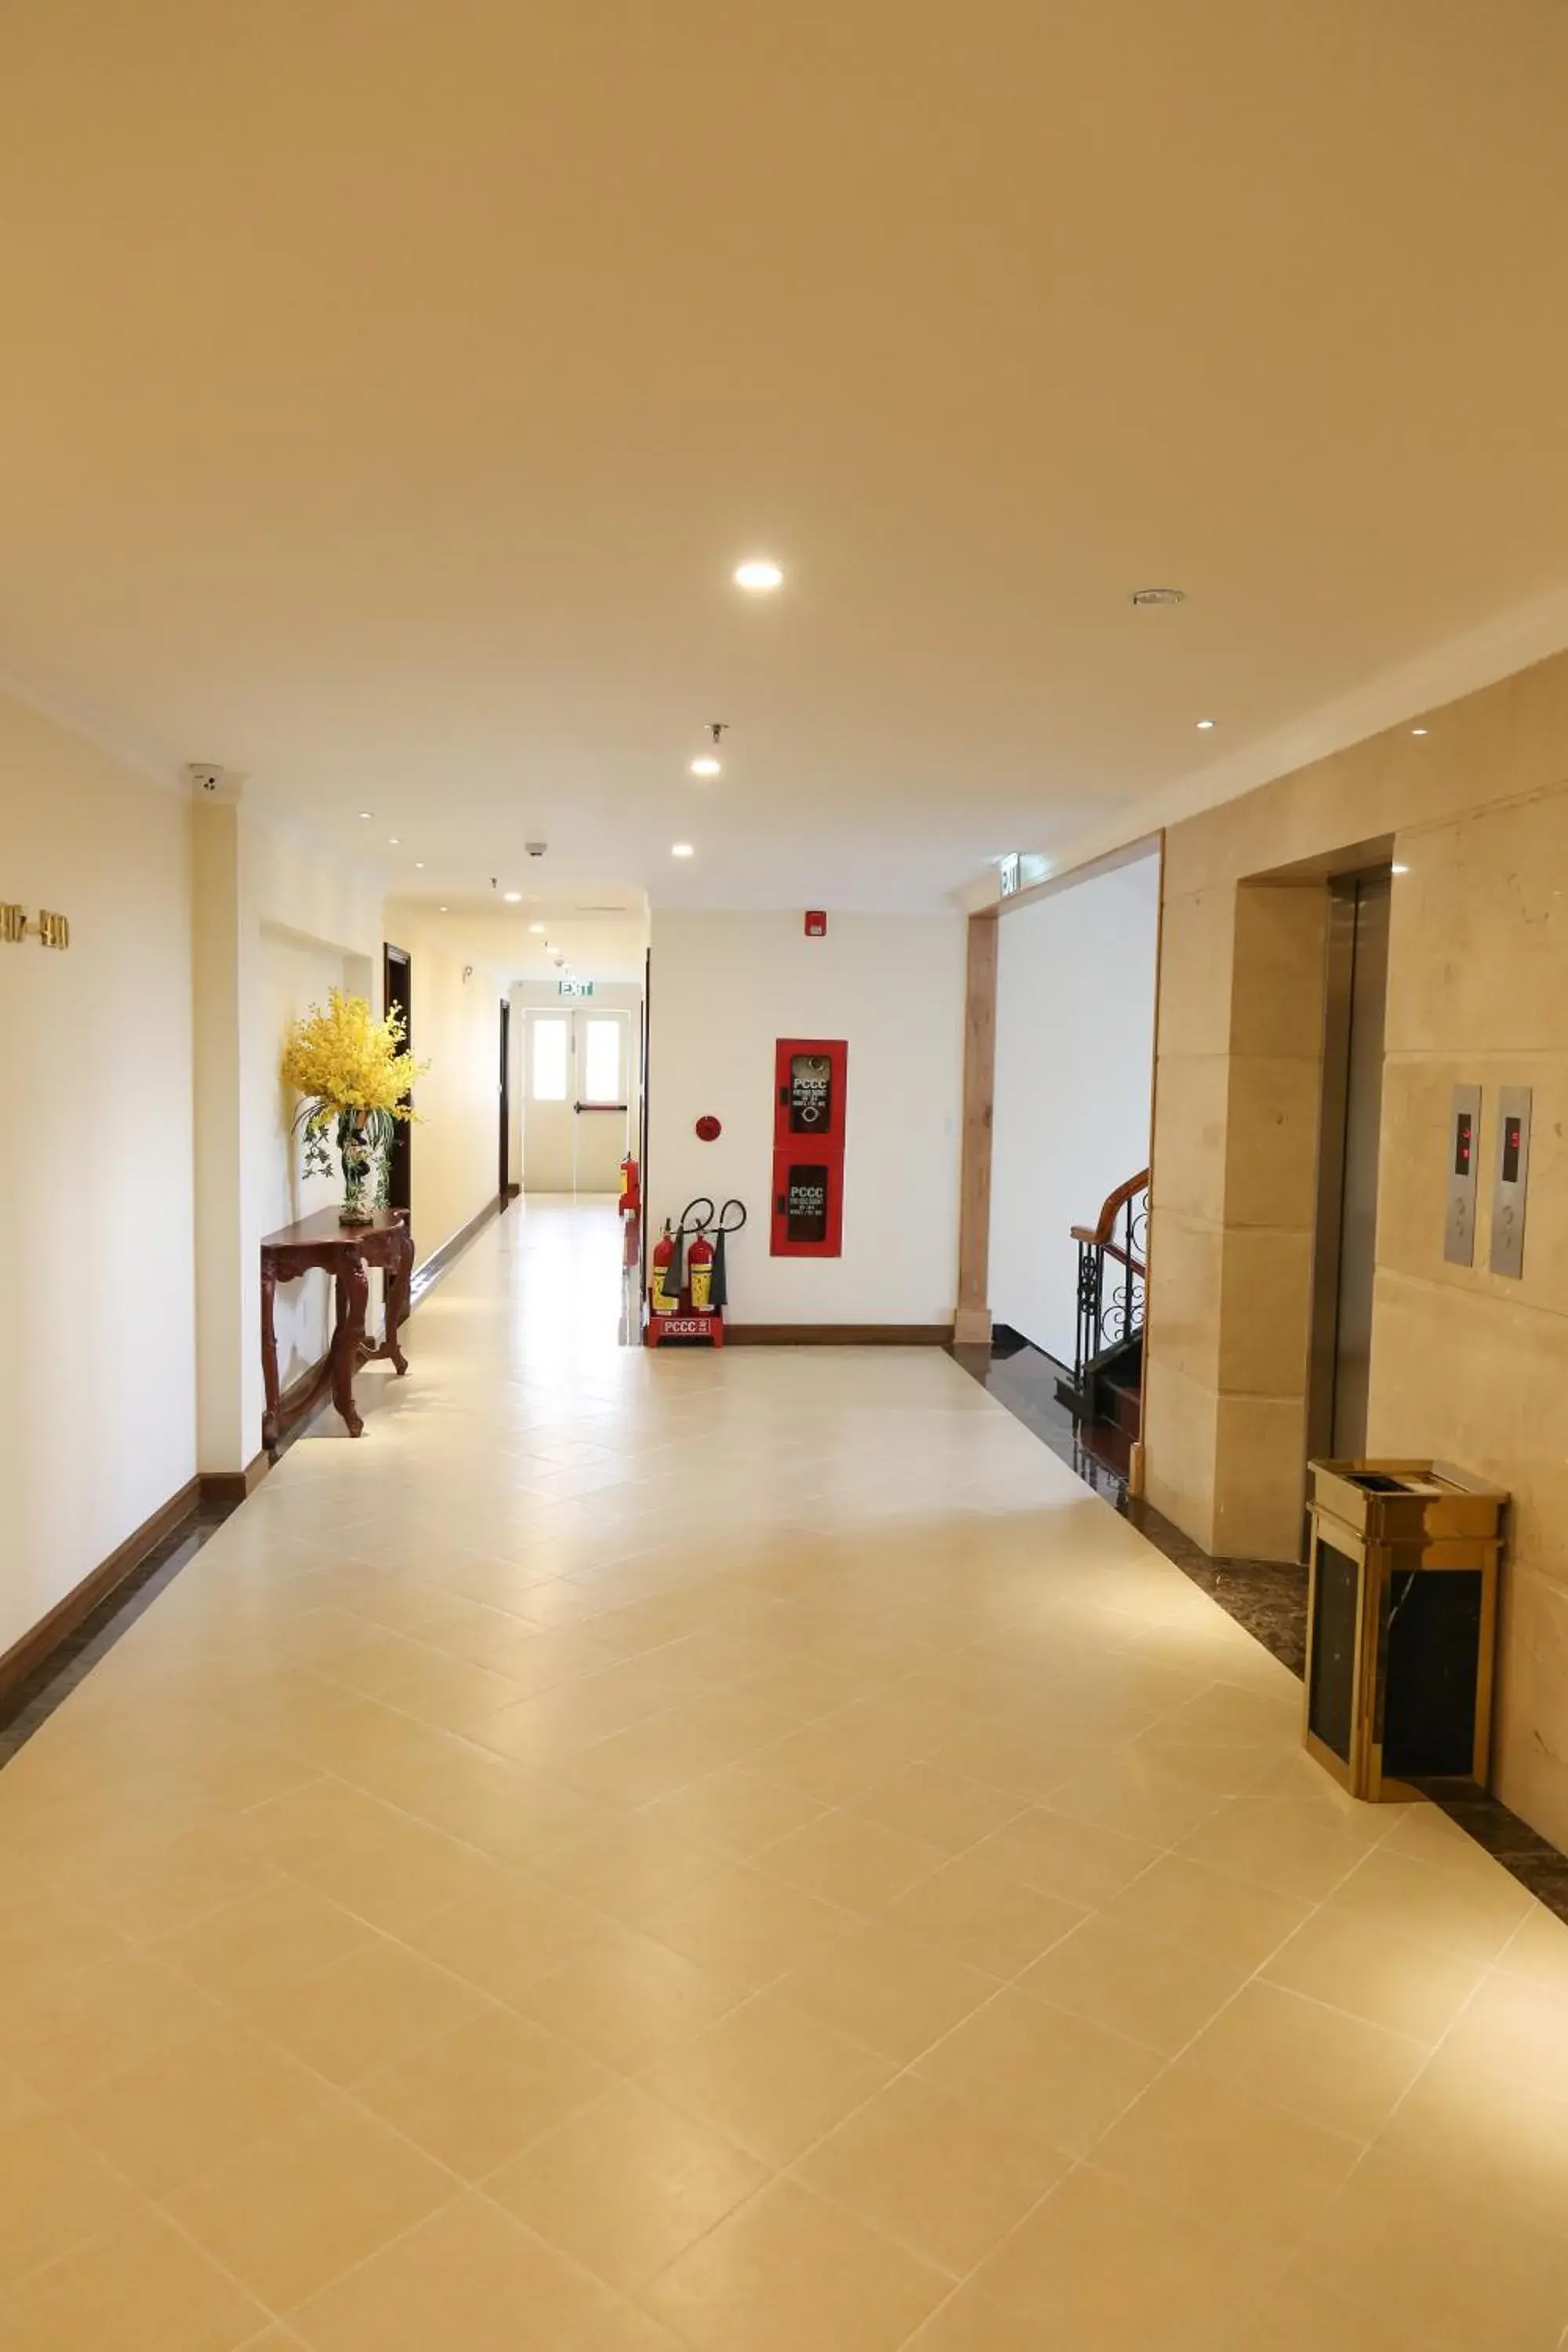 Lobby or reception, Lobby/Reception in Iris Dalat Hotel